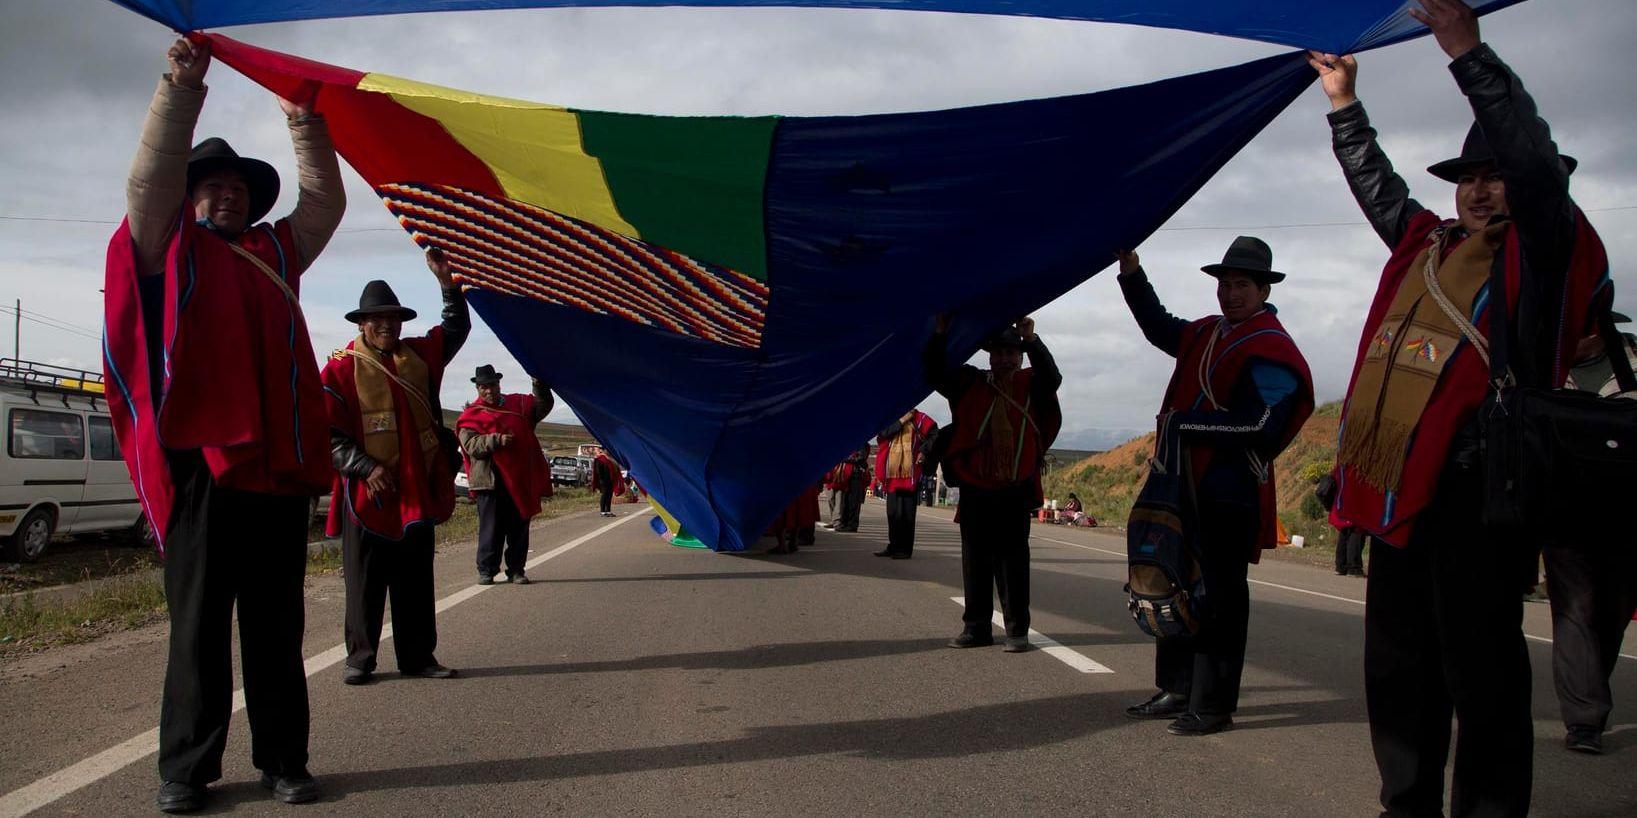 Tusentals bolivianer vecklade ut den närmare 200 km långa flaggan.